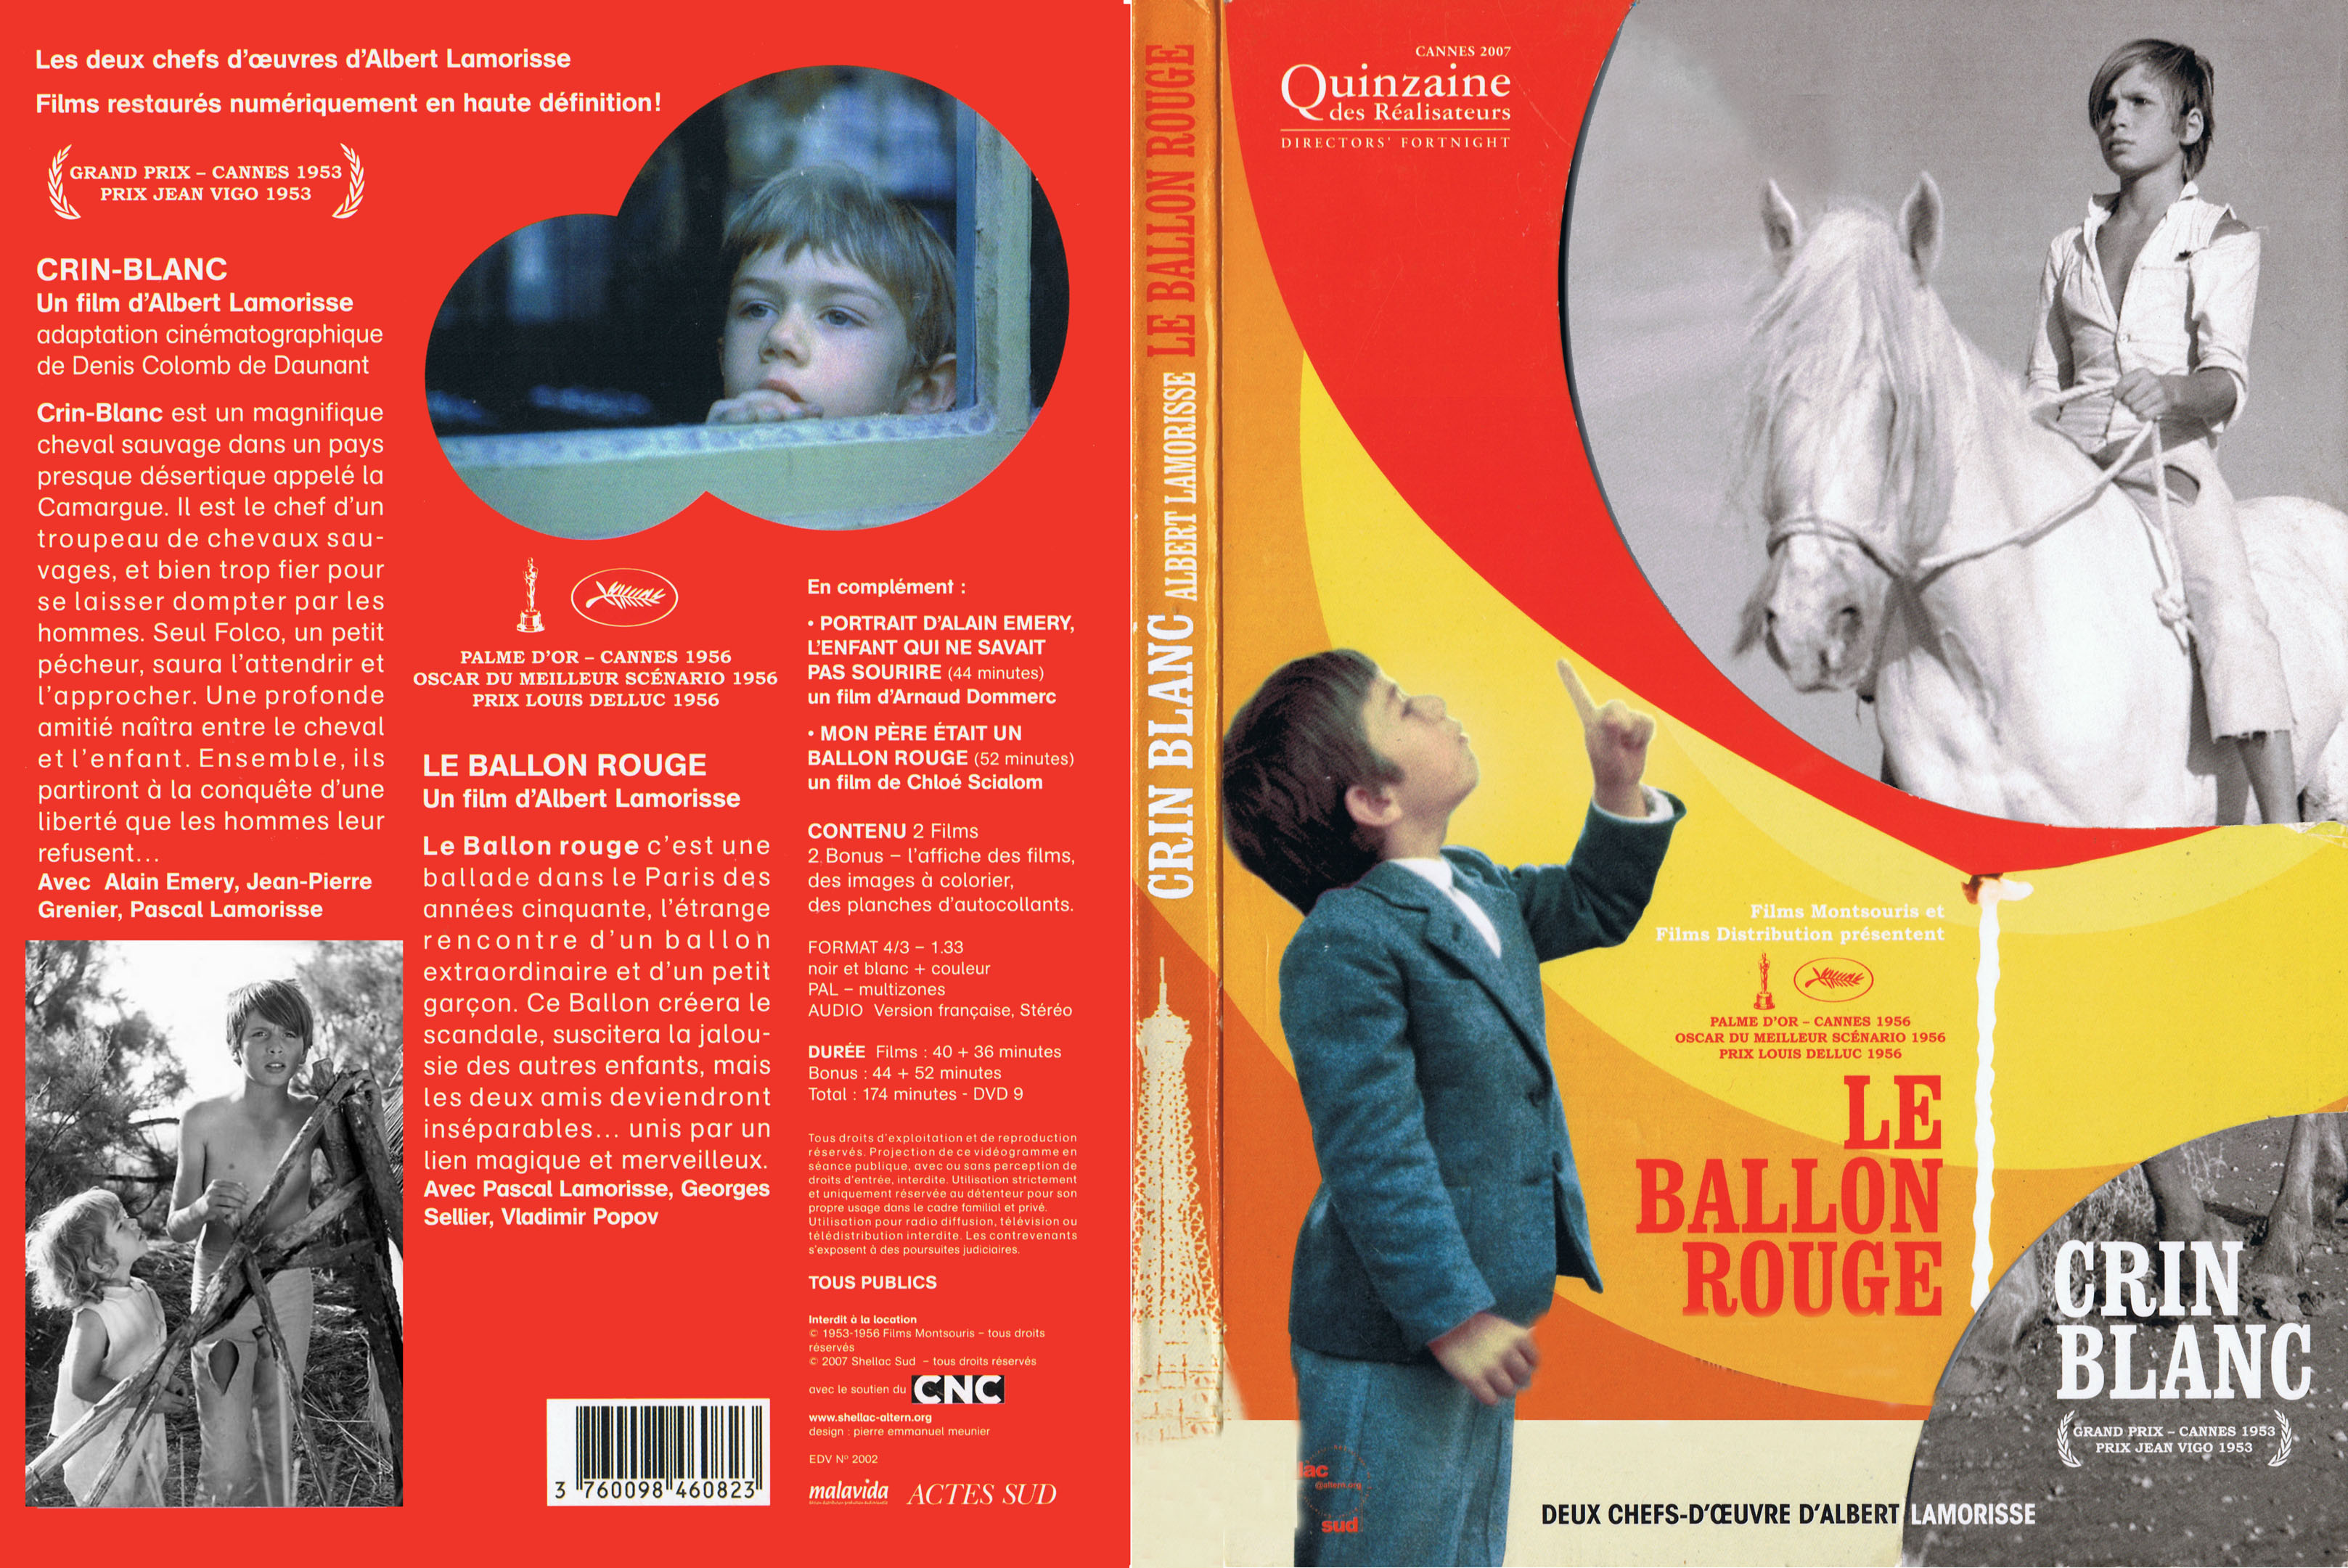 Jaquette DVD Le ballon rouge + Crin-blanc